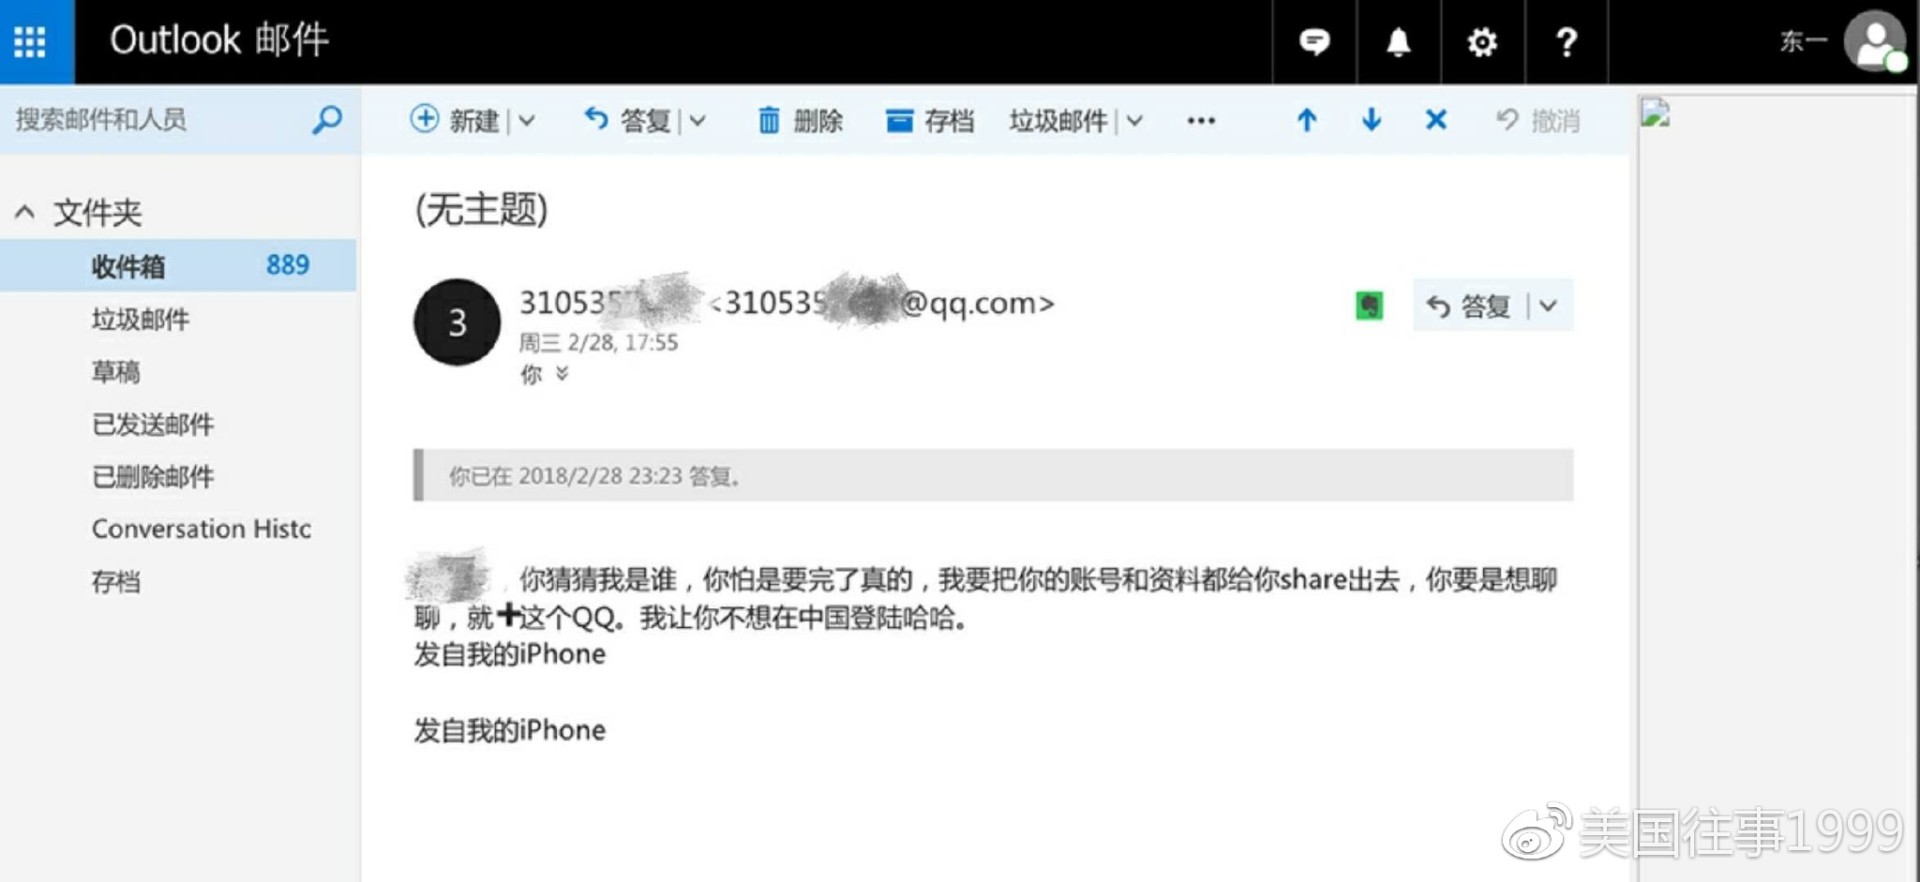 苹果iCloud云上贵州服务第一天 技术顾问窃取用户资料敲诈勒索